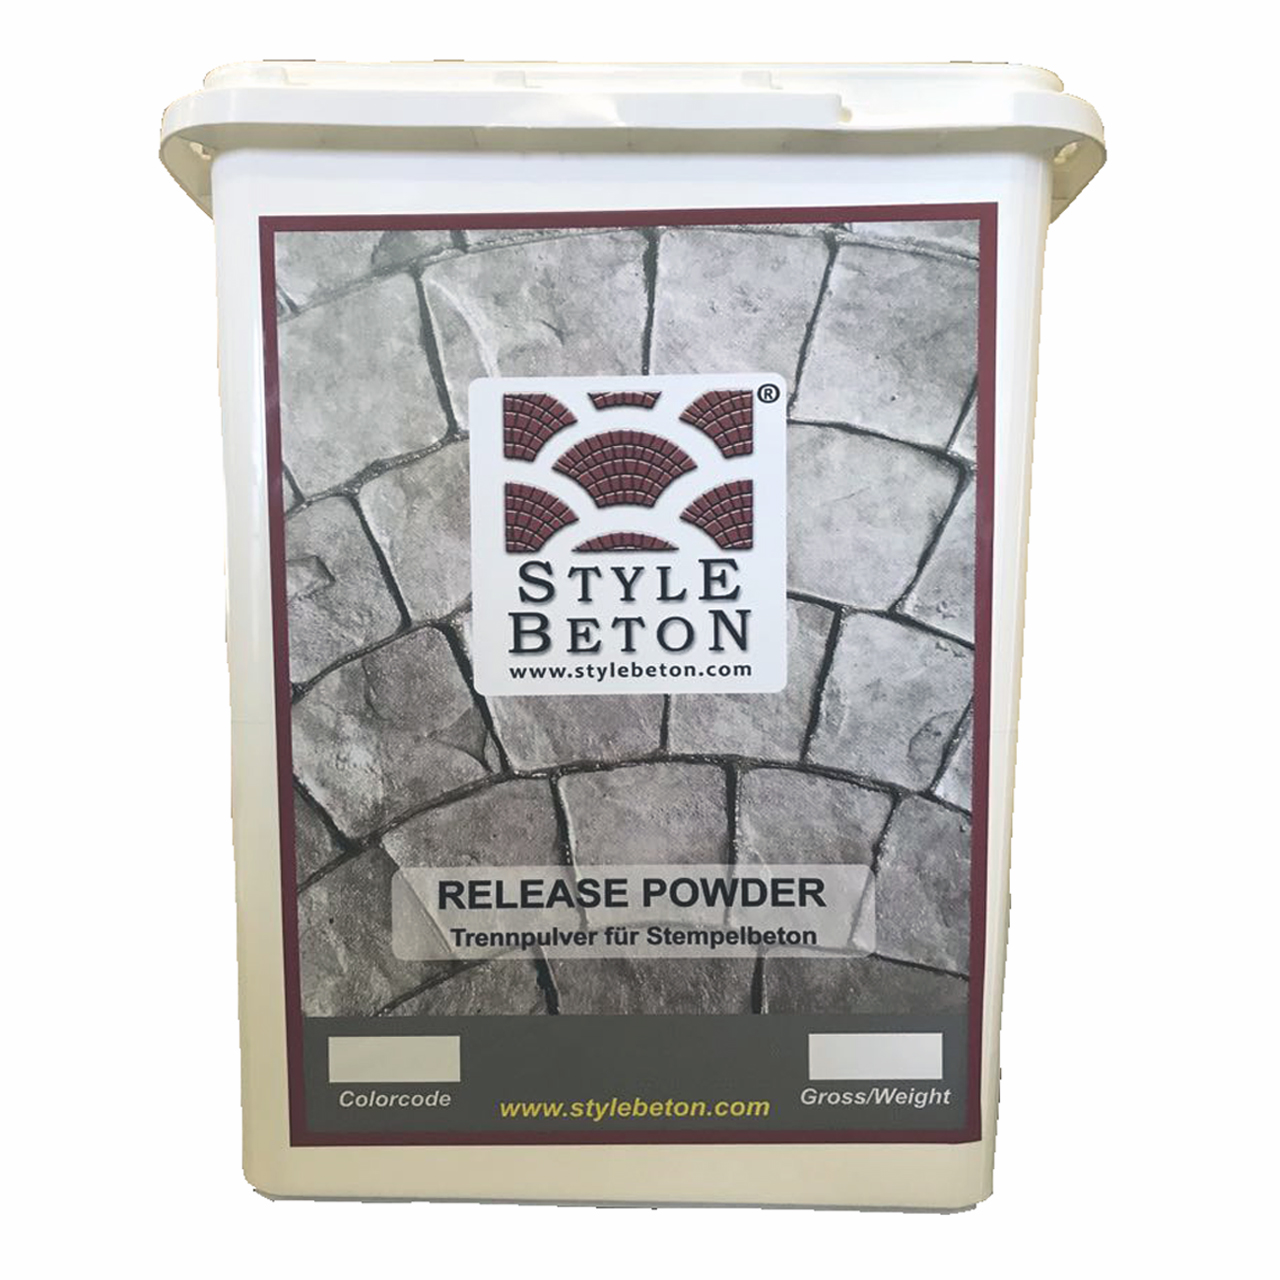 Style Beton Release Powder (Trennpulver)